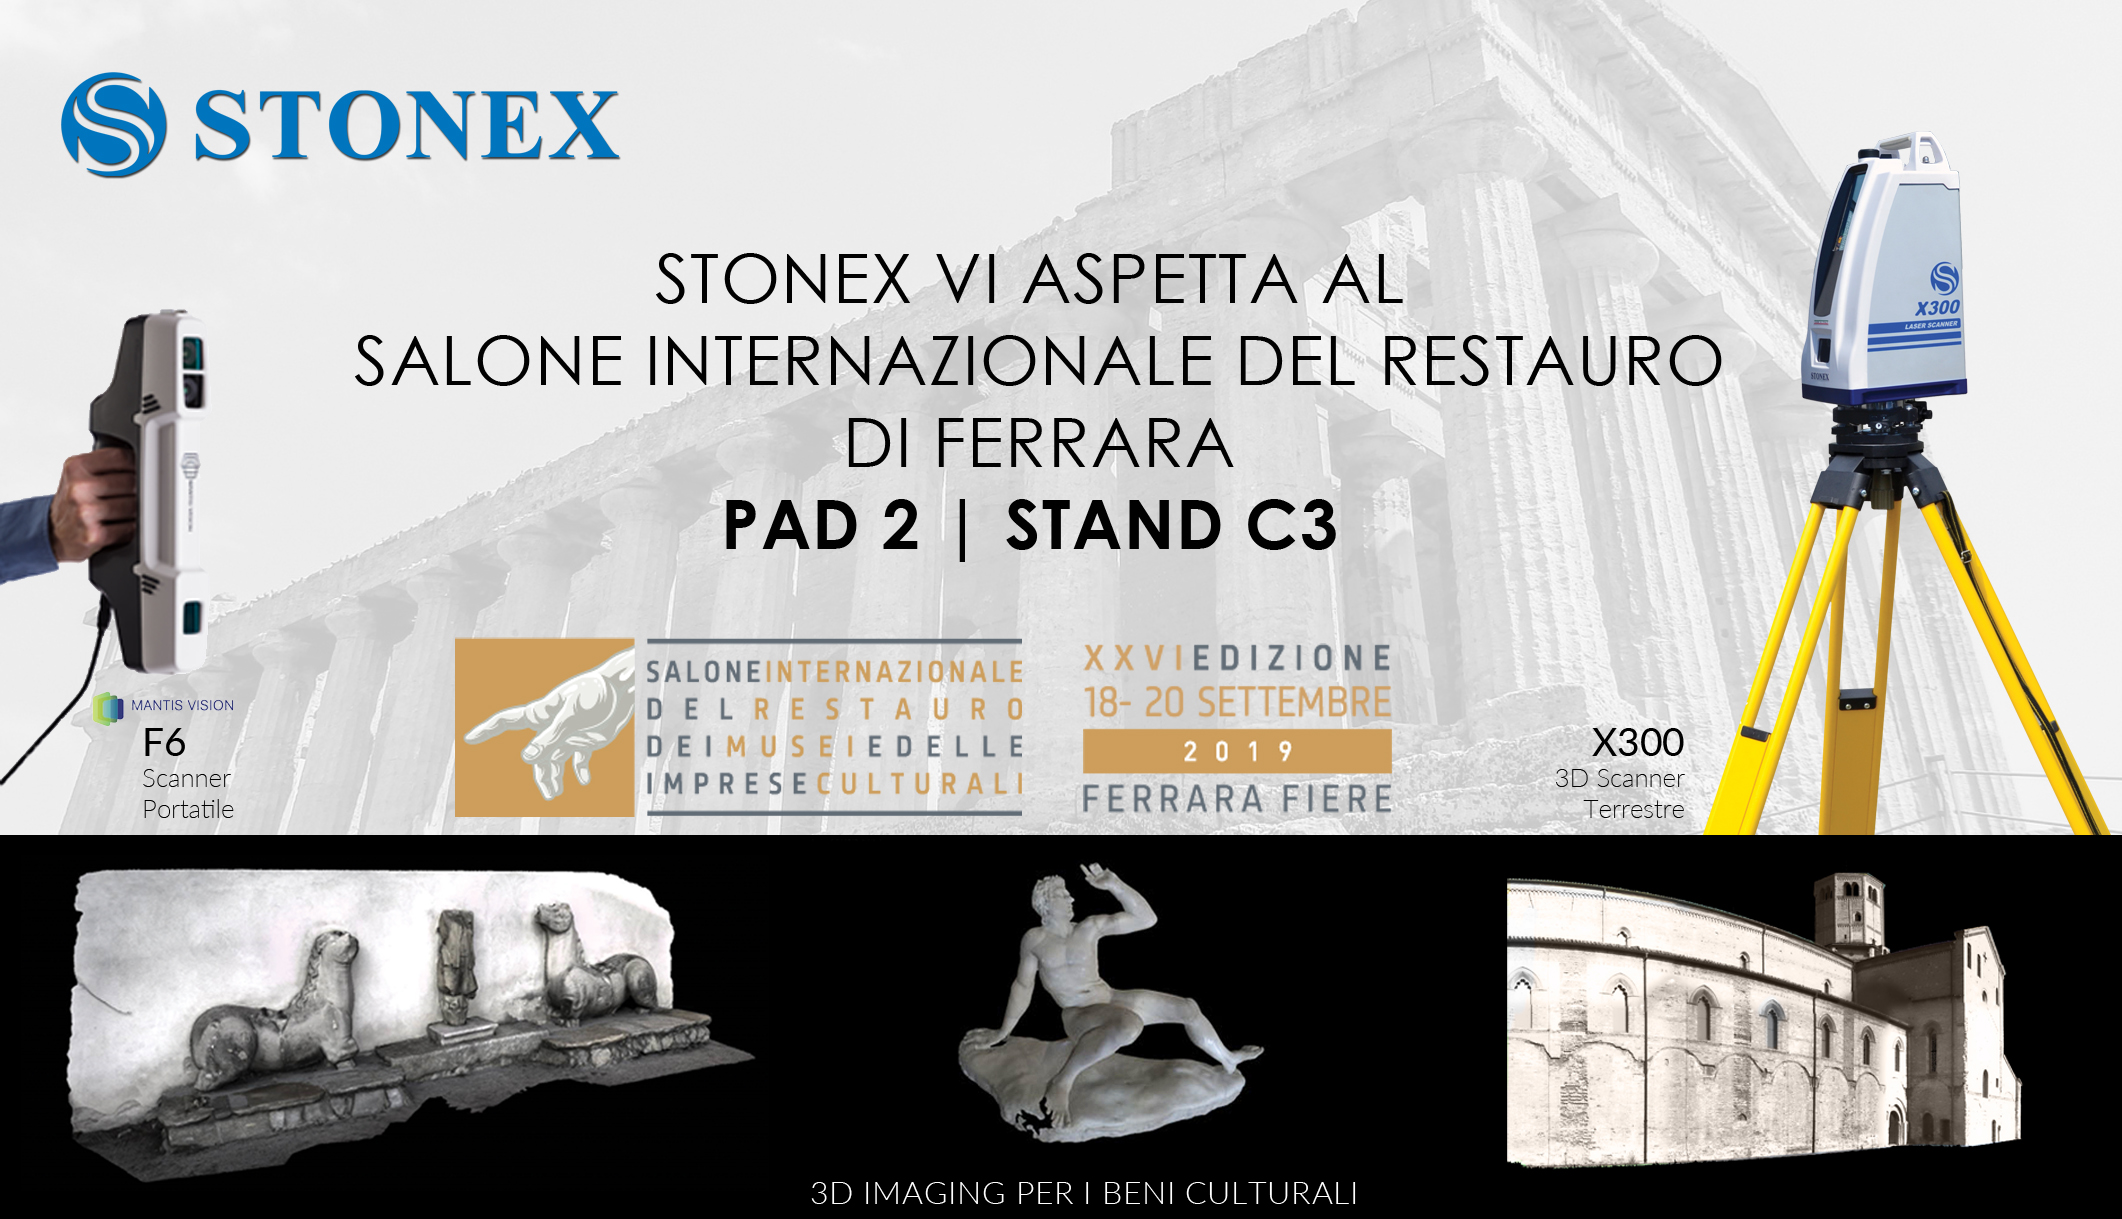 Stonex al Salone Internazionale del Restauro, dei Musei e delle Imprese Culturali di Ferrara